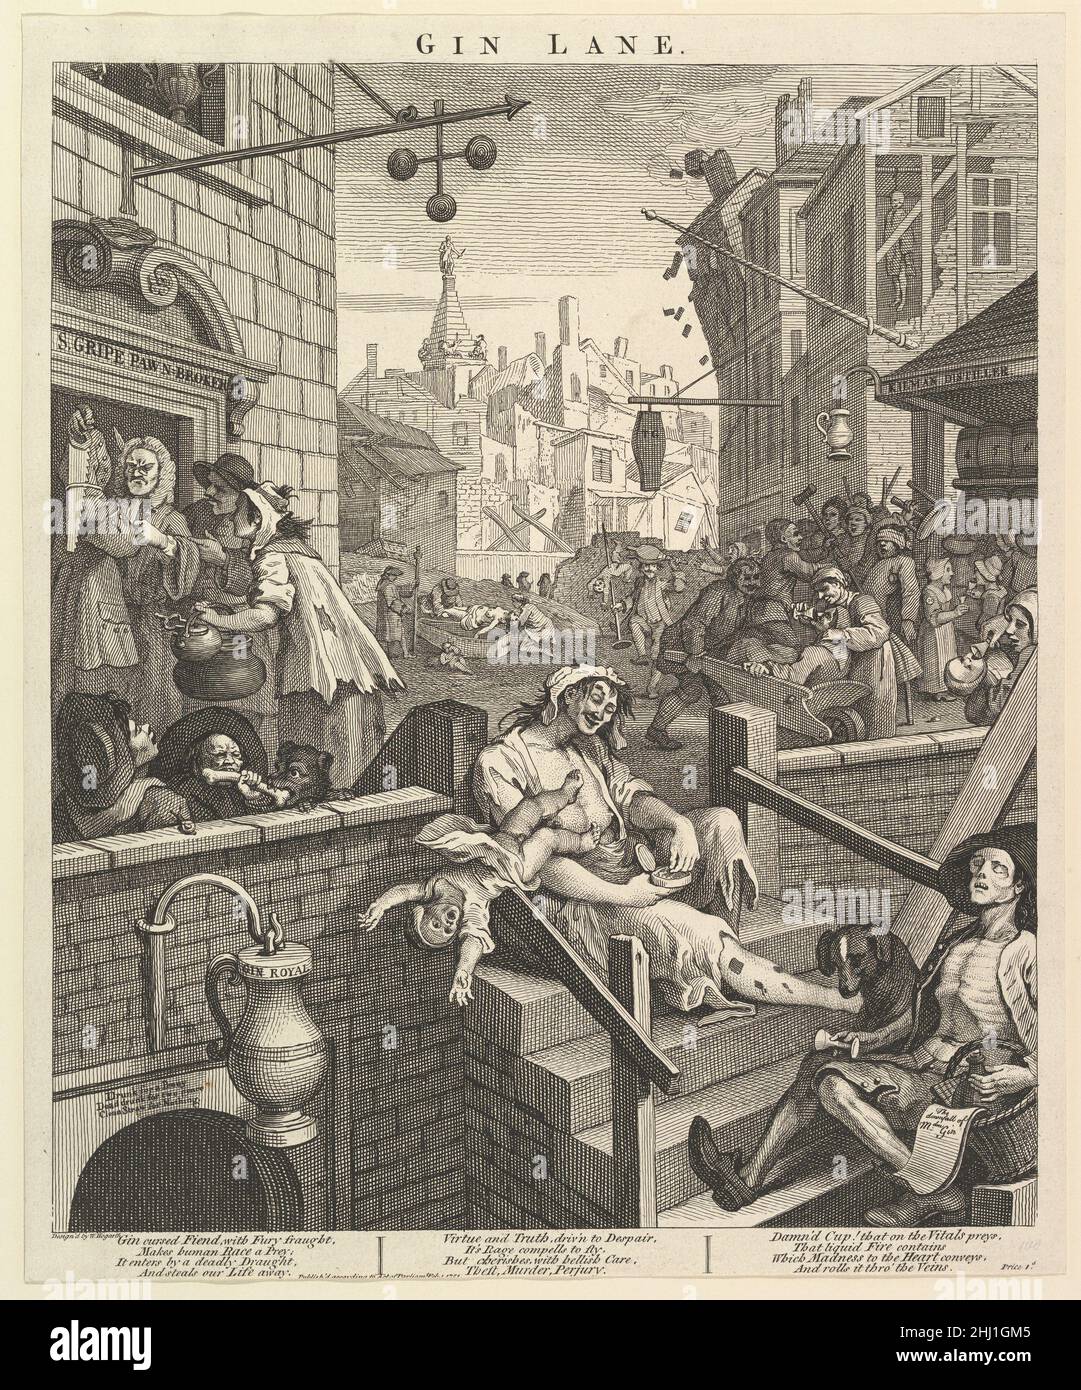 Gin Lane February 1, 1751 William Hogarth British. Gin Lane  399847 Stock Photo